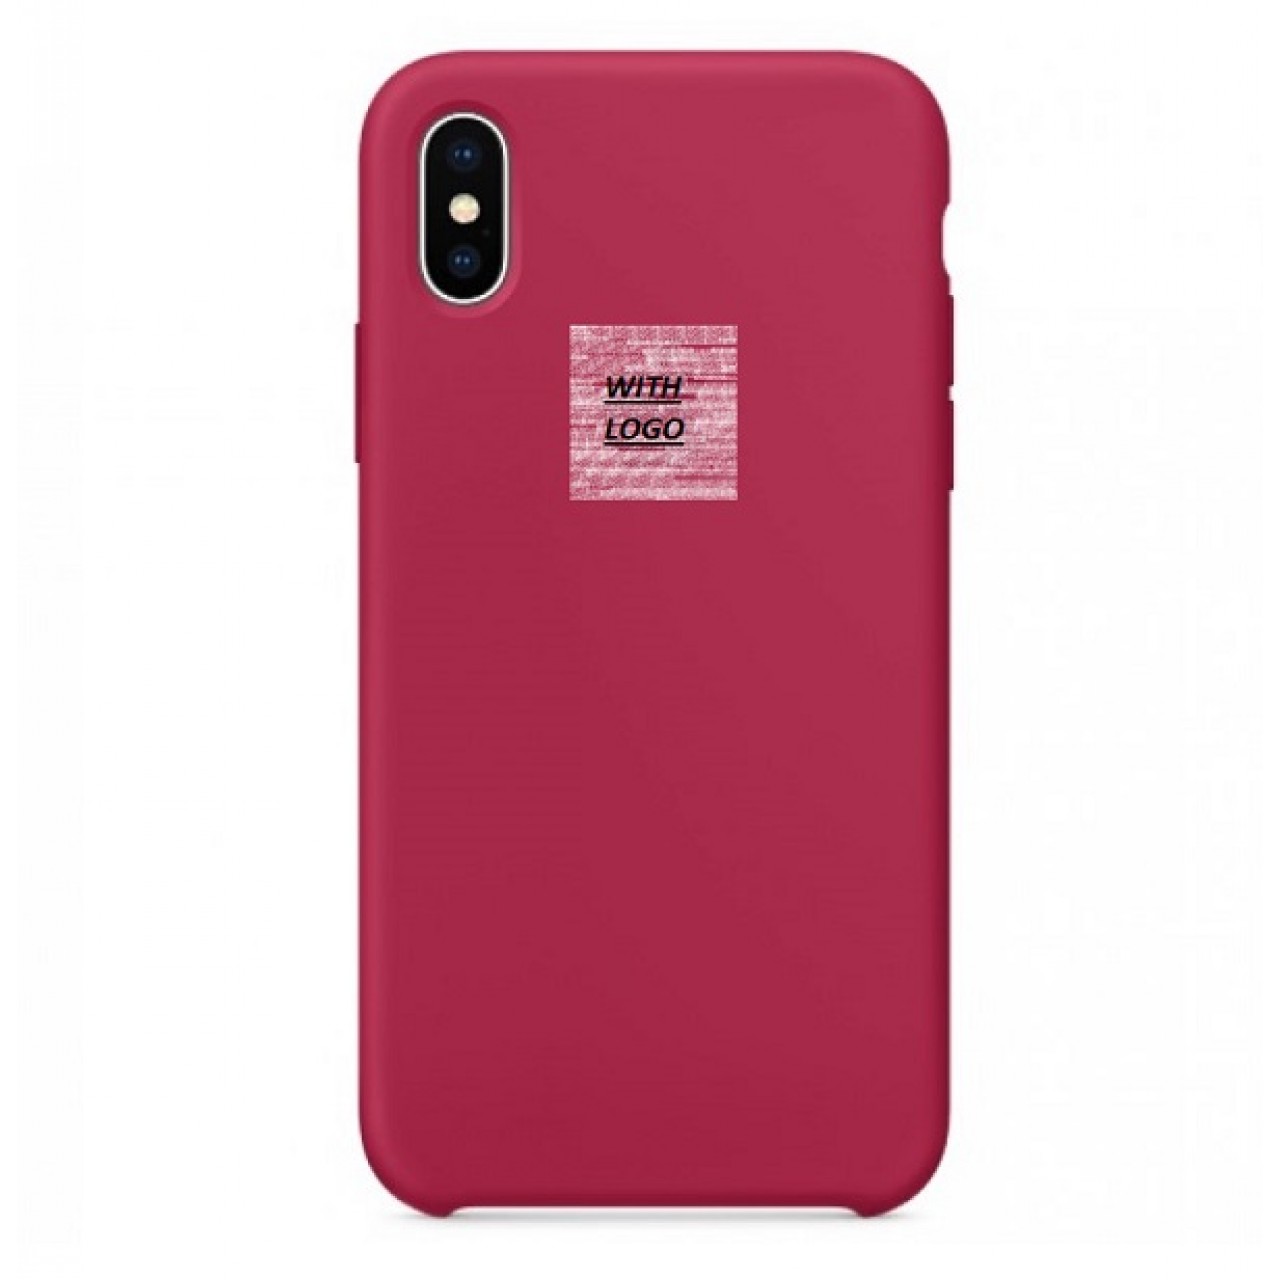 Θήκη Προστασίας Σιλικόνης iPhone XR - Back Cover Silicone Case - Rose Red